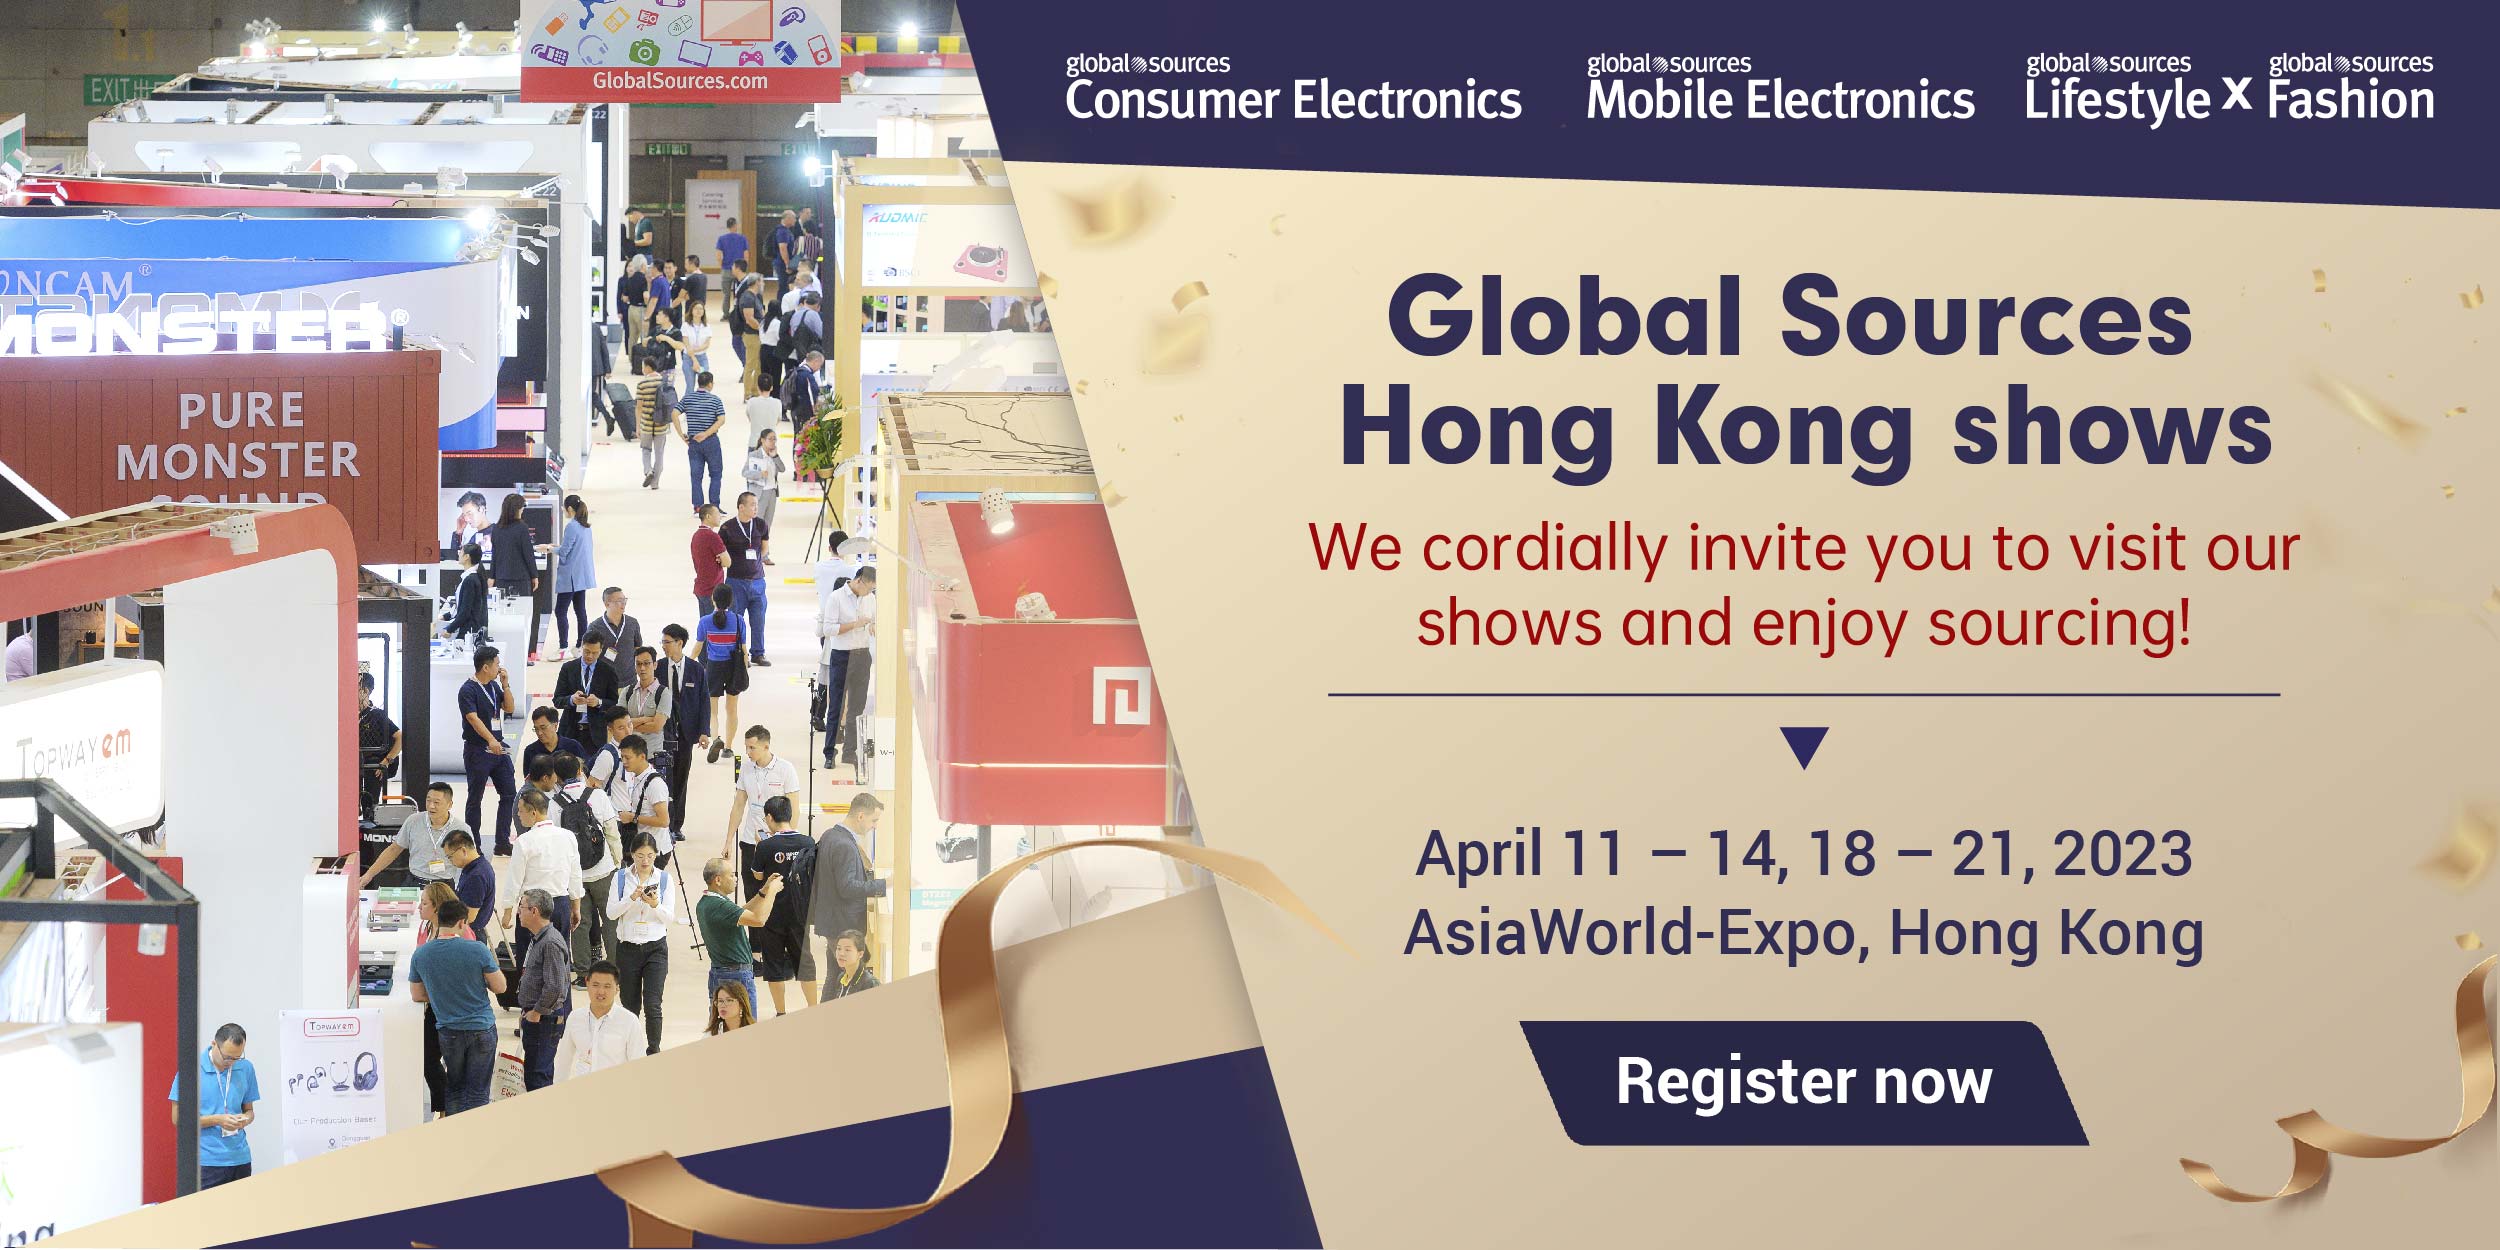 Global Sources Hong Kong inoratidza 11-14, Kubvumbi, 2023 Consumer Electronics show